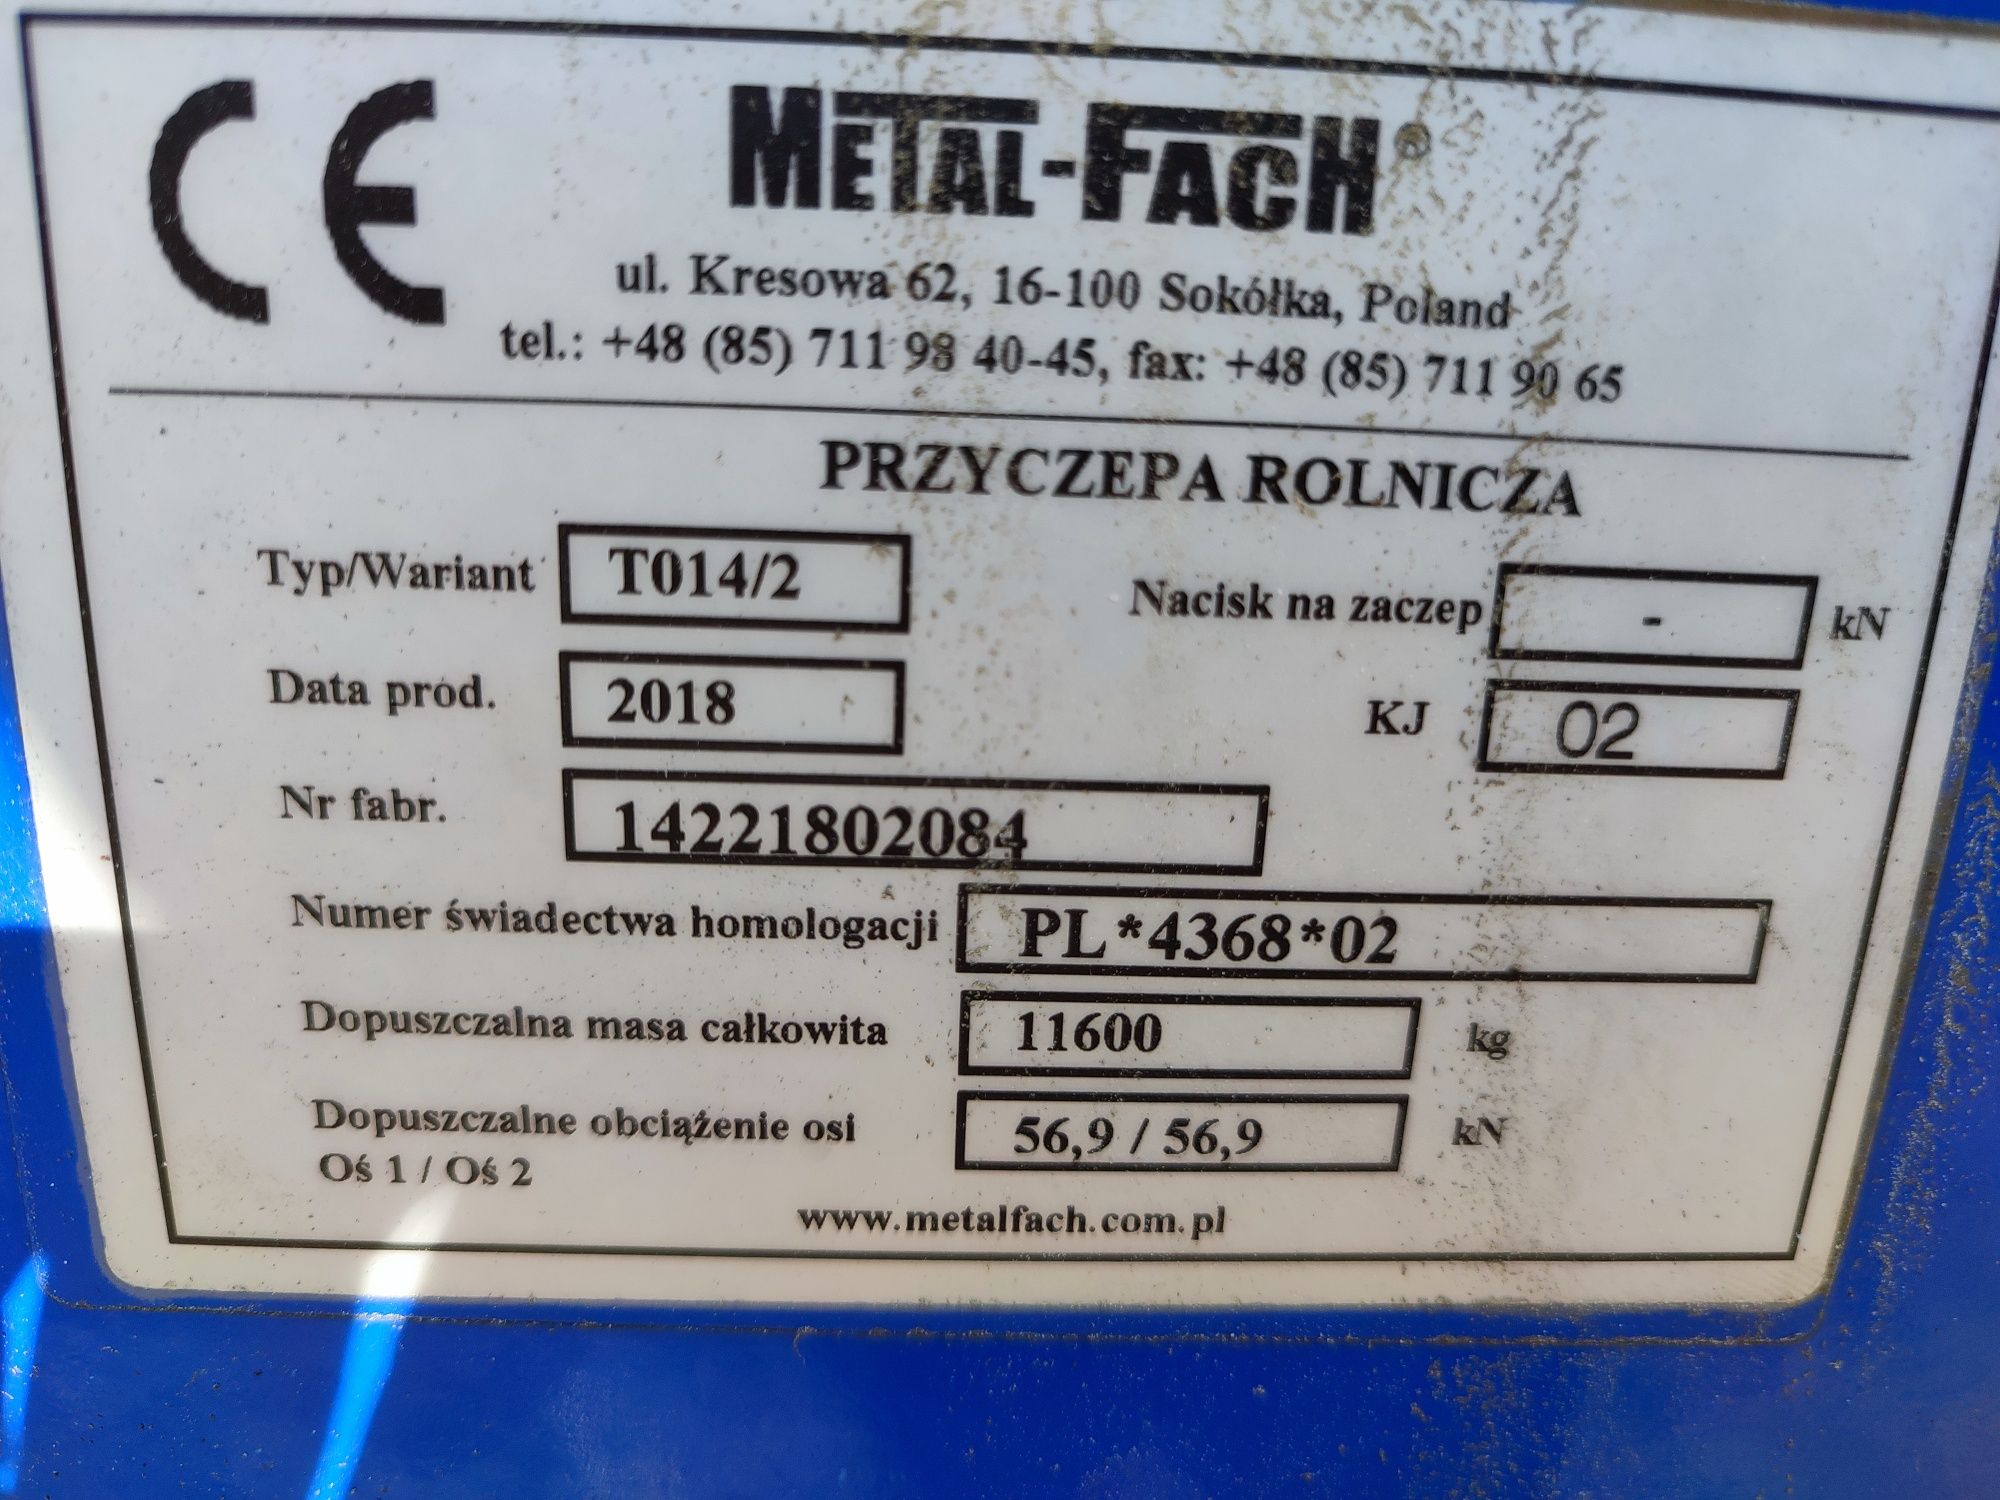 Platforma przyczepa do bel TO14/2 9 ton Metal fach nie używana